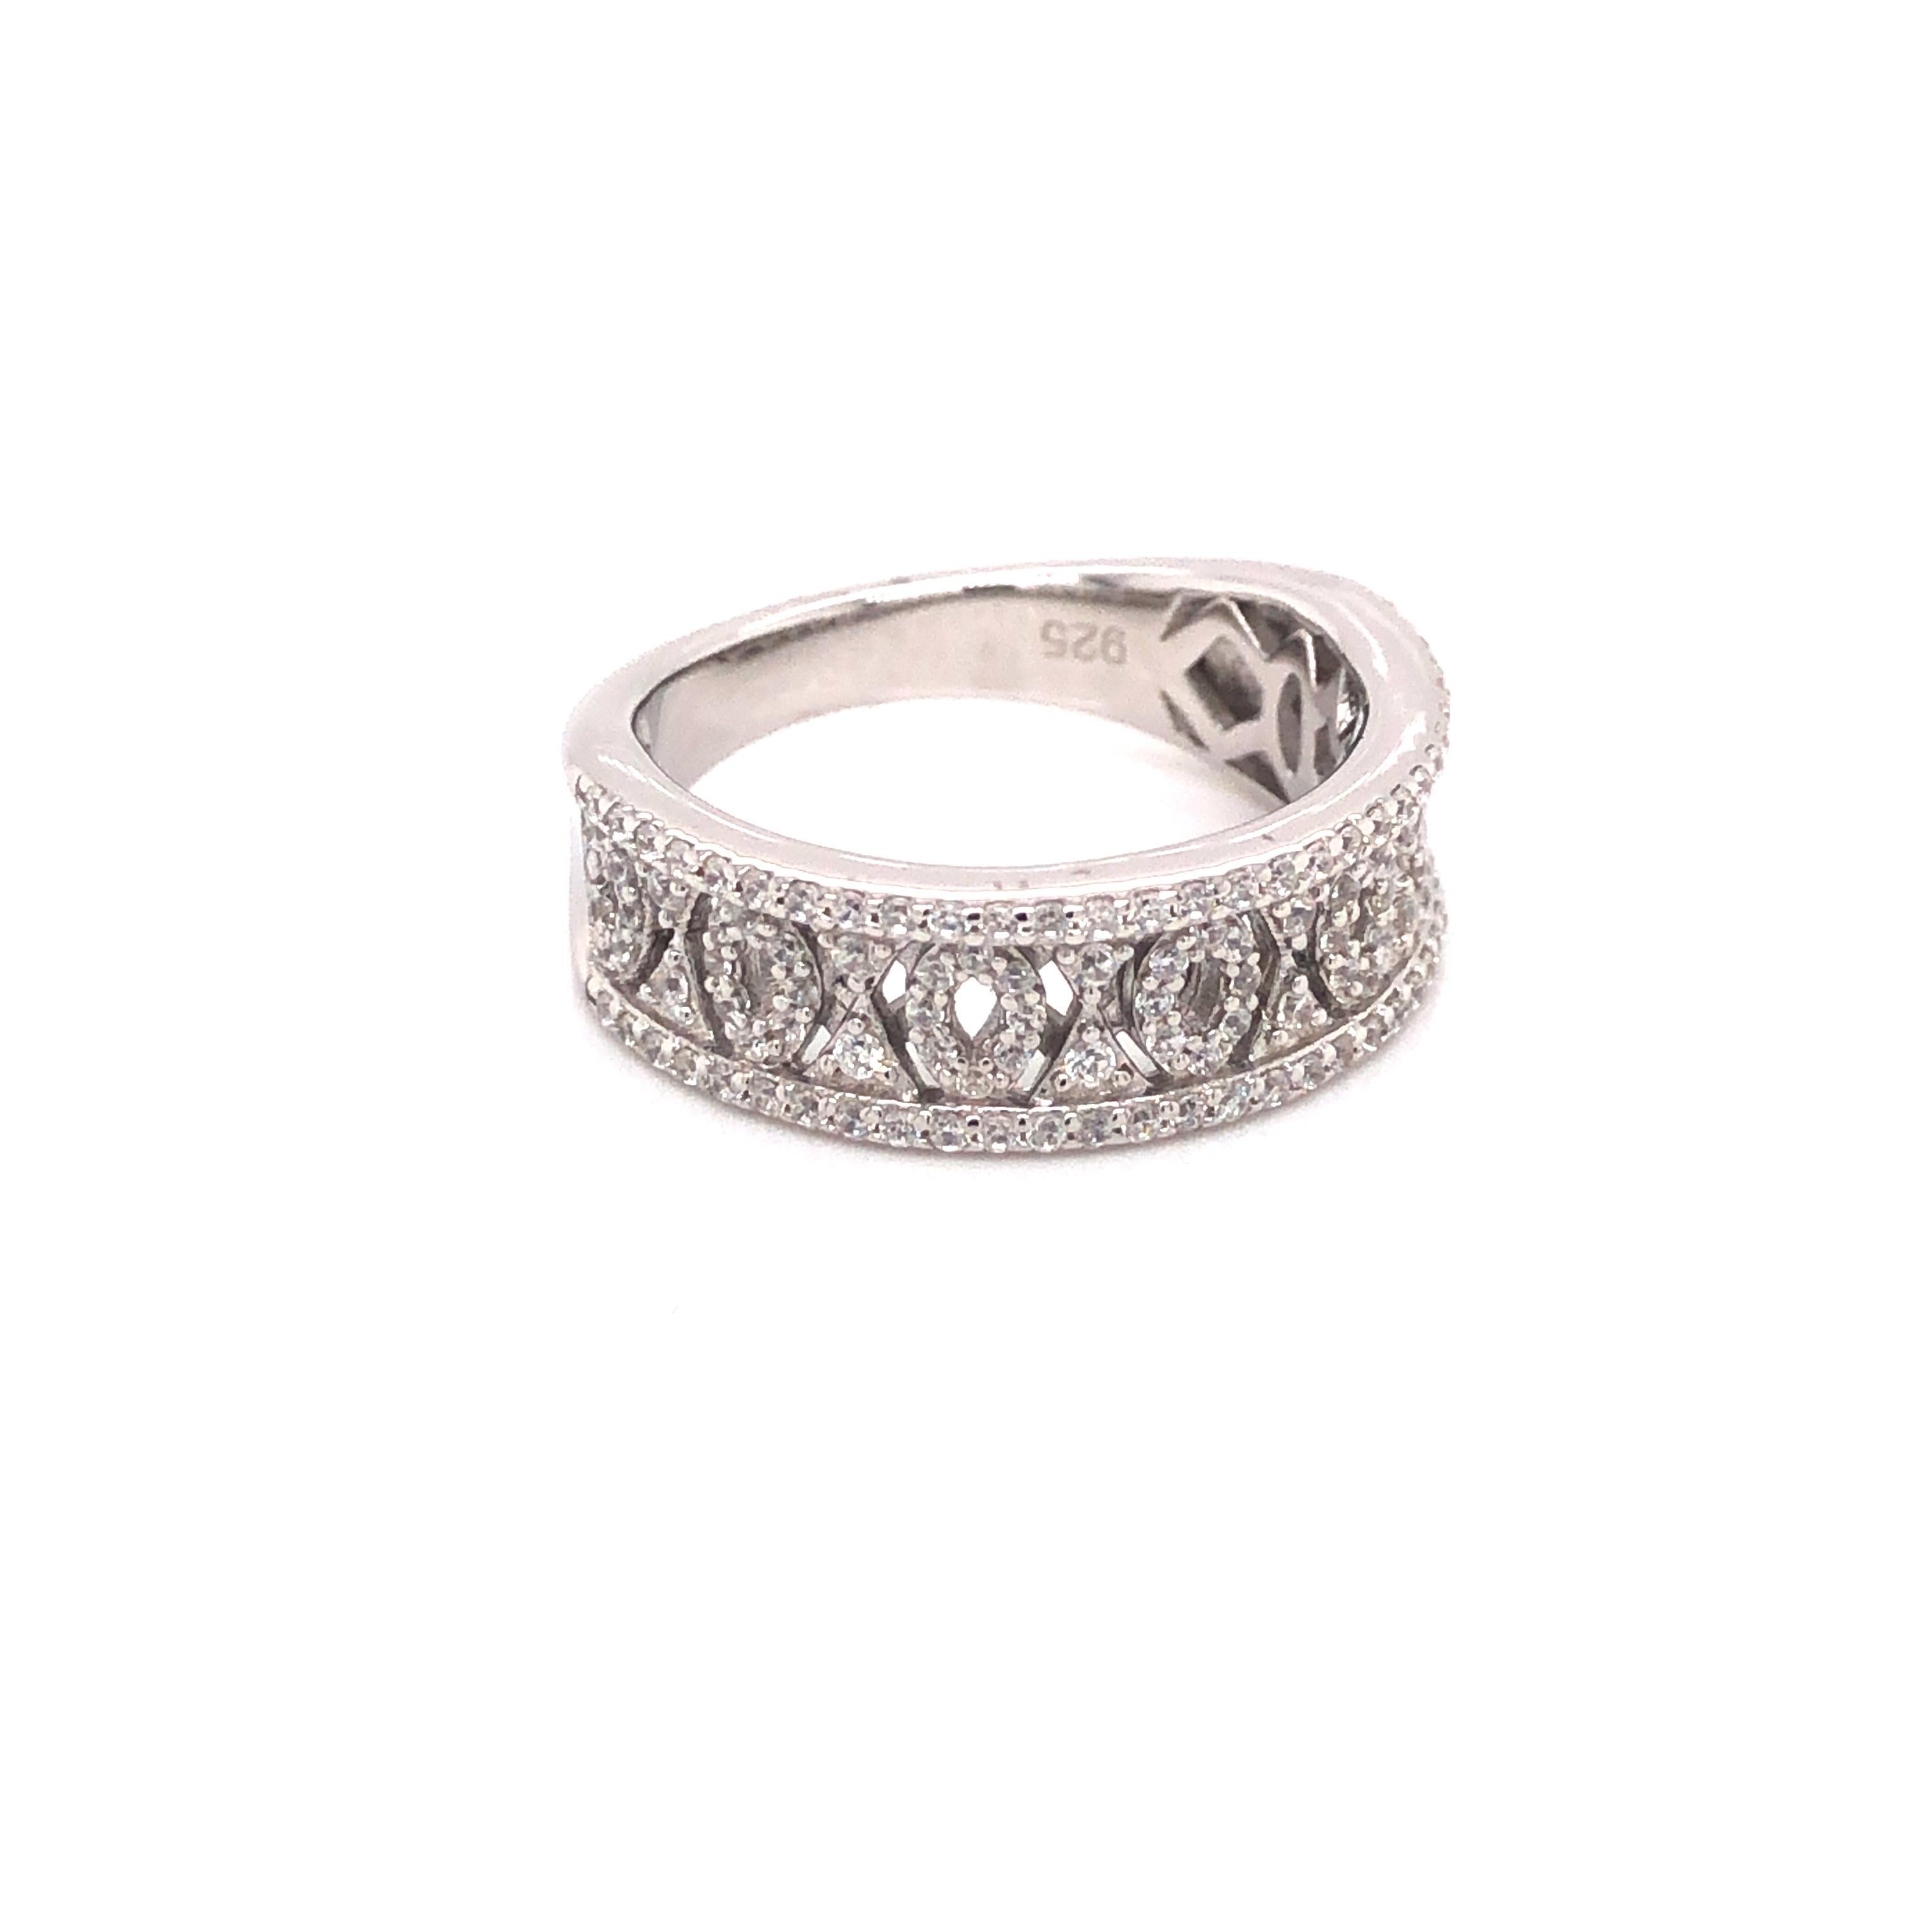 Eine perfekte Mischung aus klassischem und modernem Design. Dieser wunderschöne Ring wäre ein atemberaubender Ehering oder einfach ein atemberaubender Ring für jede Gelegenheit. 

Der runde Brillantschliff von 1,07 ct. ist in Sterlingsilber gefasst